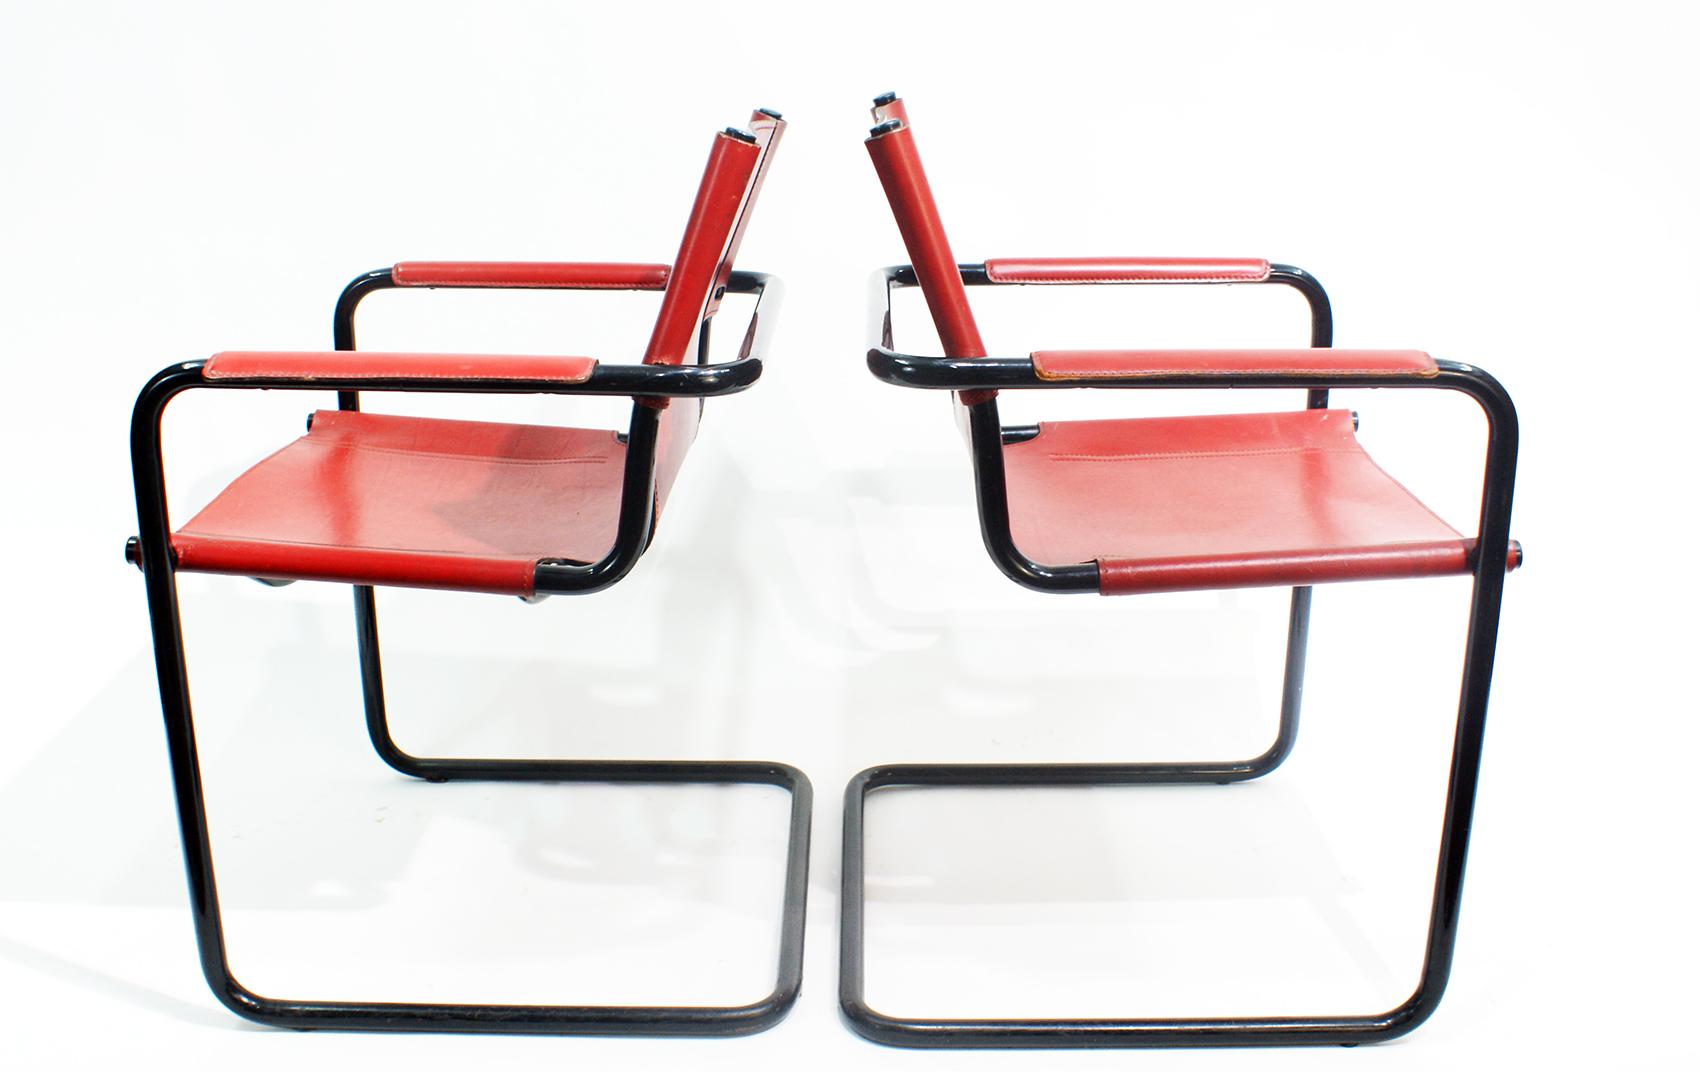 Vintage Matteo Grassi Freischwinger stilvolle Besucher Stühle, Italien, 1970er Jahre. Signiert Matteo Grassi auf dem Leder. Es handelt sich um einen Bauhaus-Stuhl, der in den 1970er Jahren von Mart Stam für Matteo Grassi entworfen wurde. In